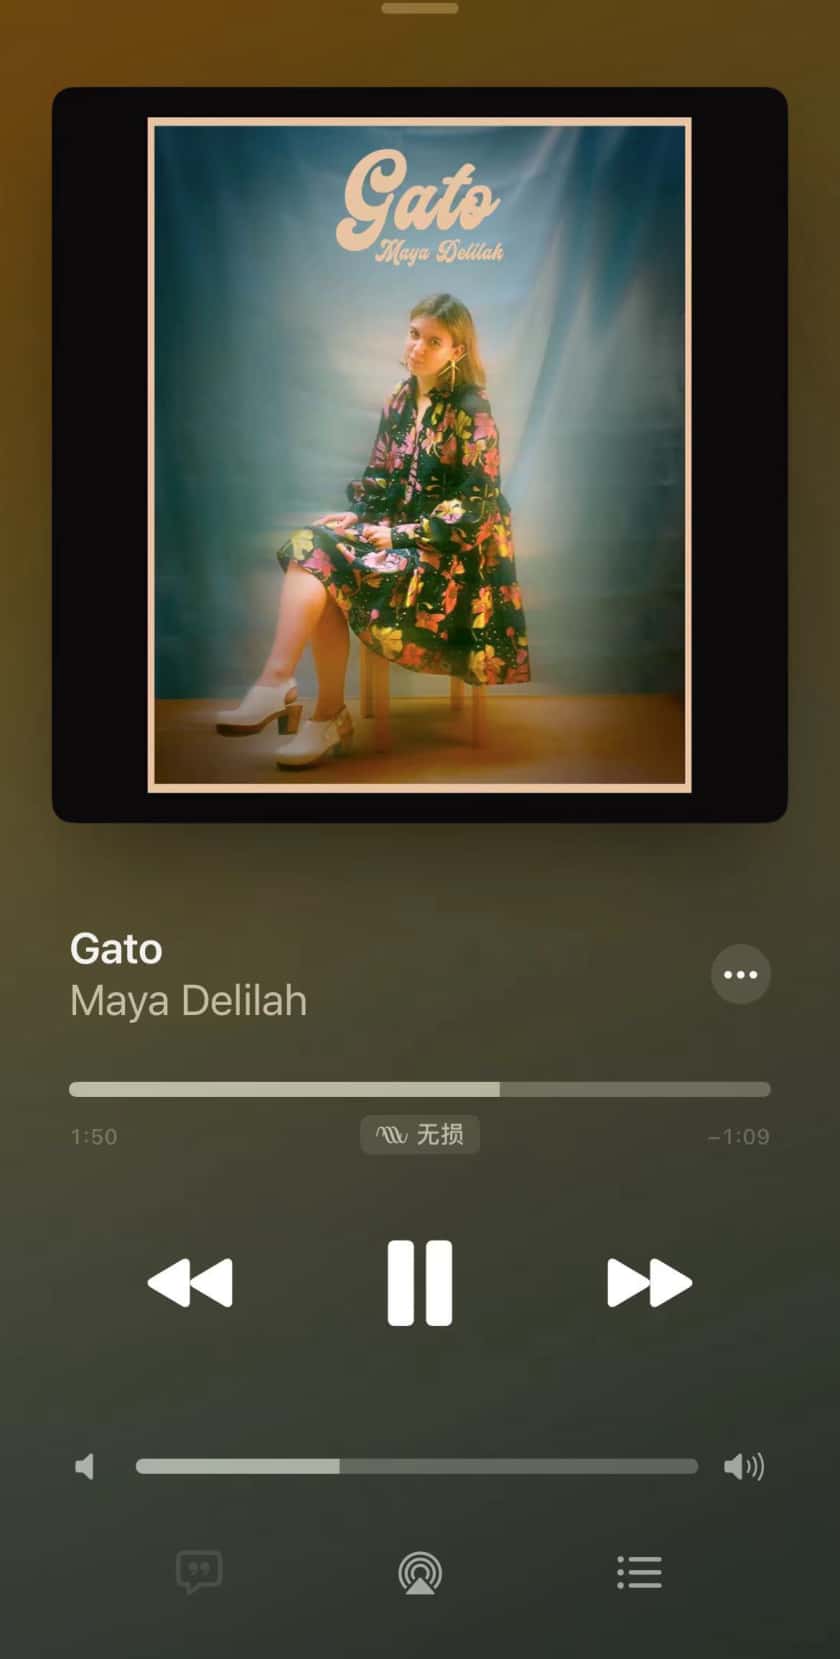 Gato-Maya Delilah